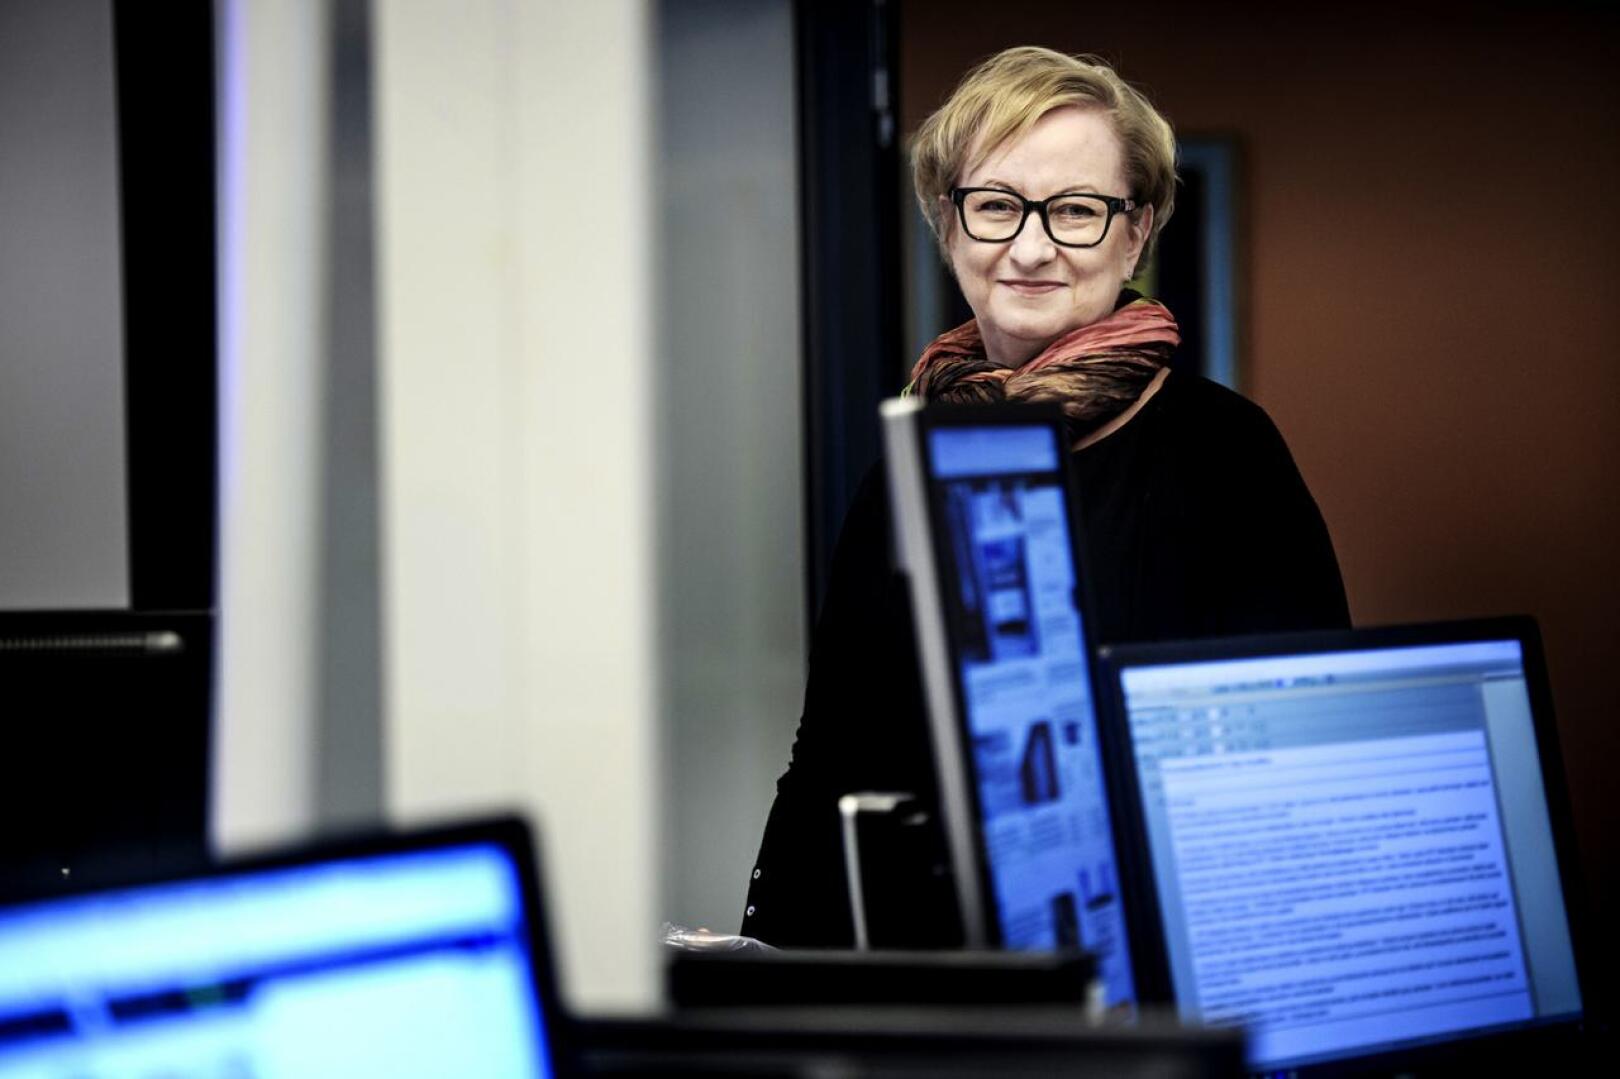 KPK Yhtiöiden sisältöjohtaja Tiina Ojutkangas kertoo jutussa, miten koronauutisointi muuttuu yrityksen lehdissä.